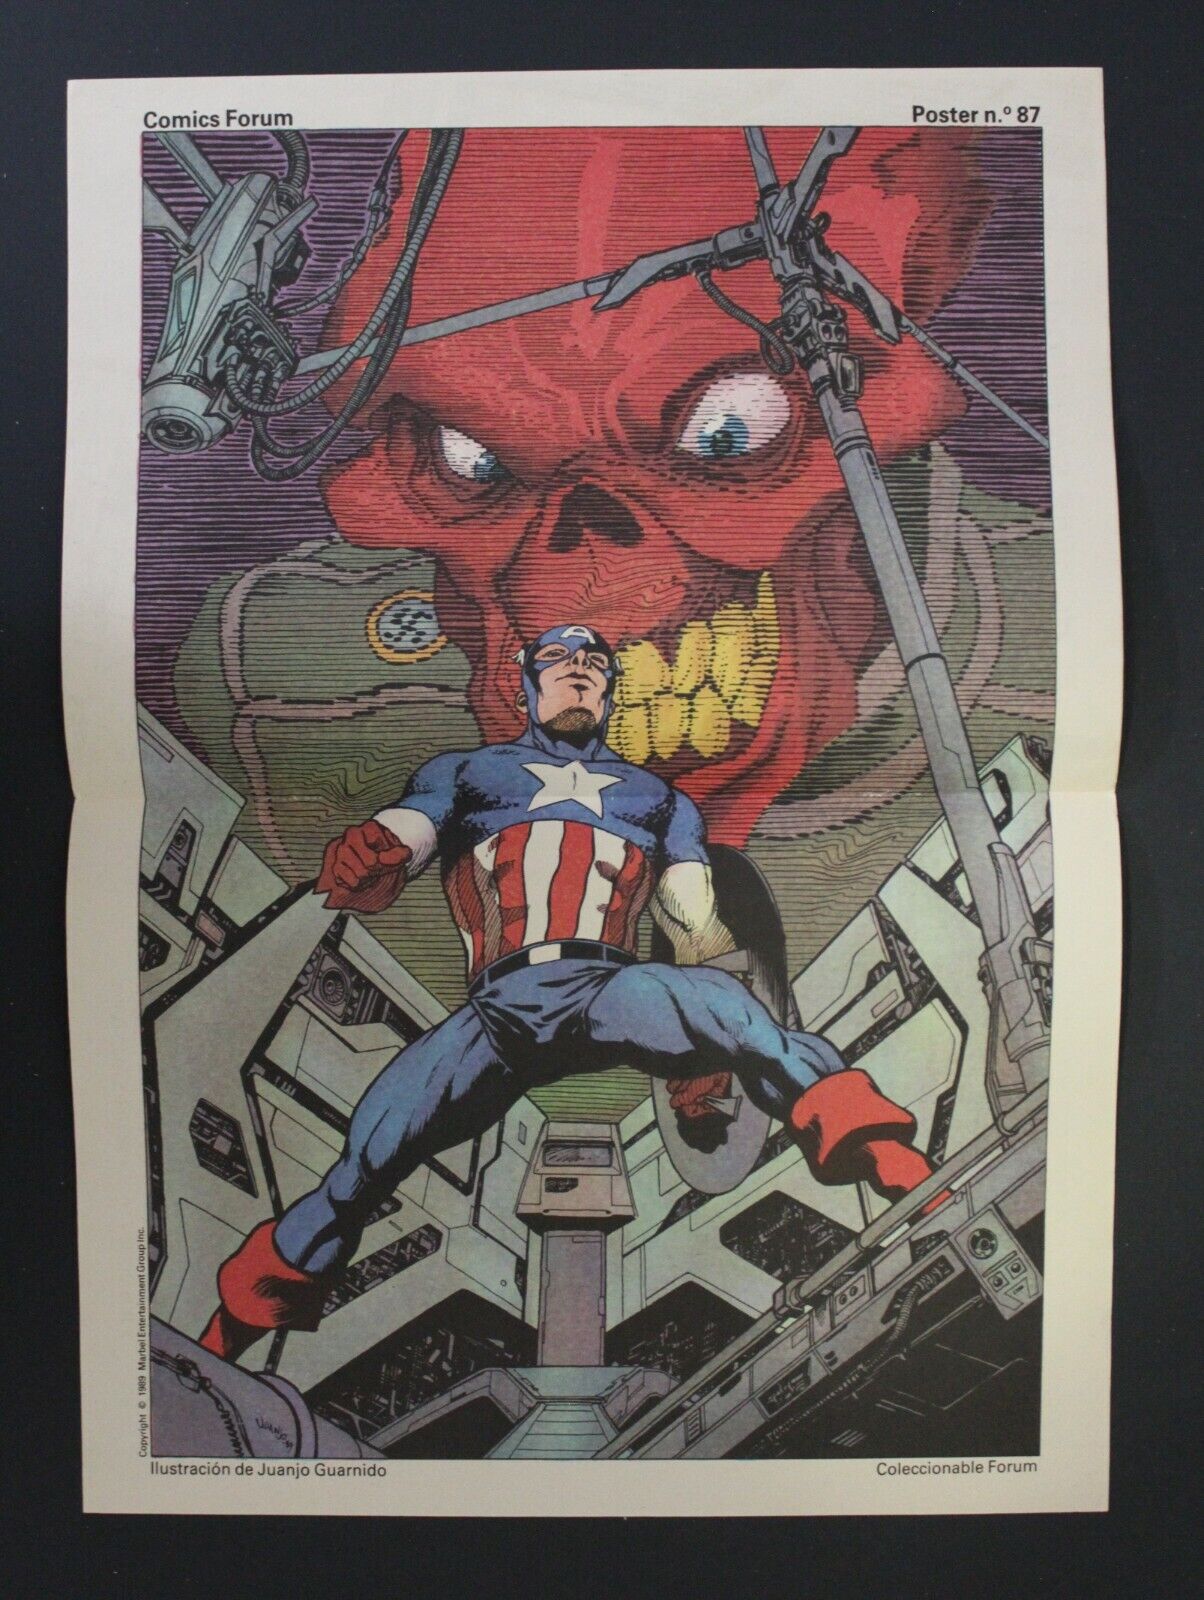 1980s CAPTAIN AMERICA & RED SKULL Poster by Juanjo Guarnido Spanish Vintge Forum